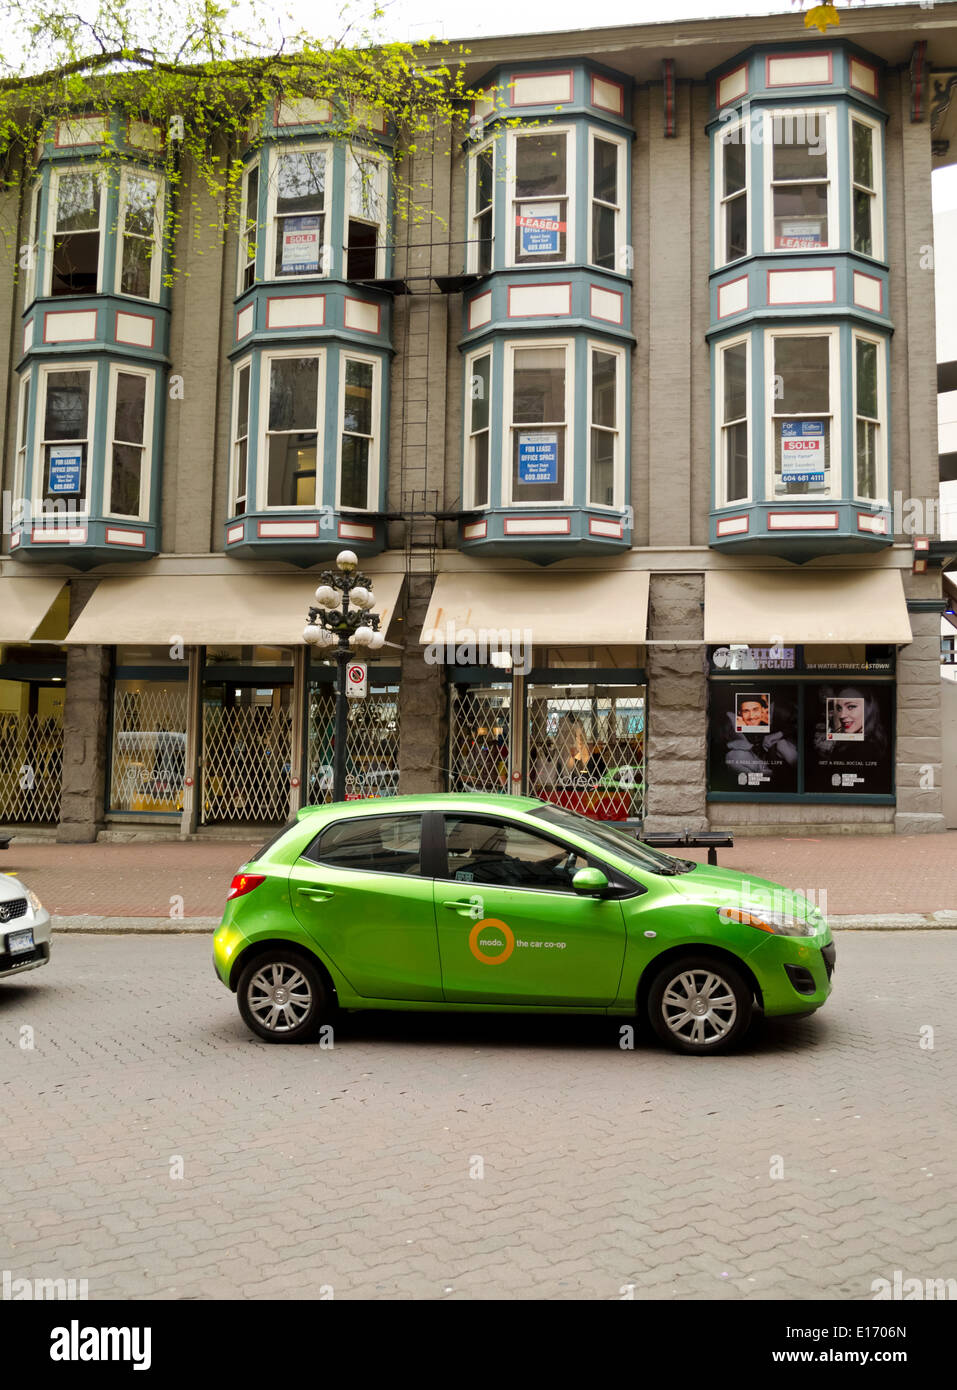 Un 'modo' auto car-sharing a Vancouver in Canada. Per le strade del centro storico Gastown Vancouver. Edifici storici e negozi. Foto Stock